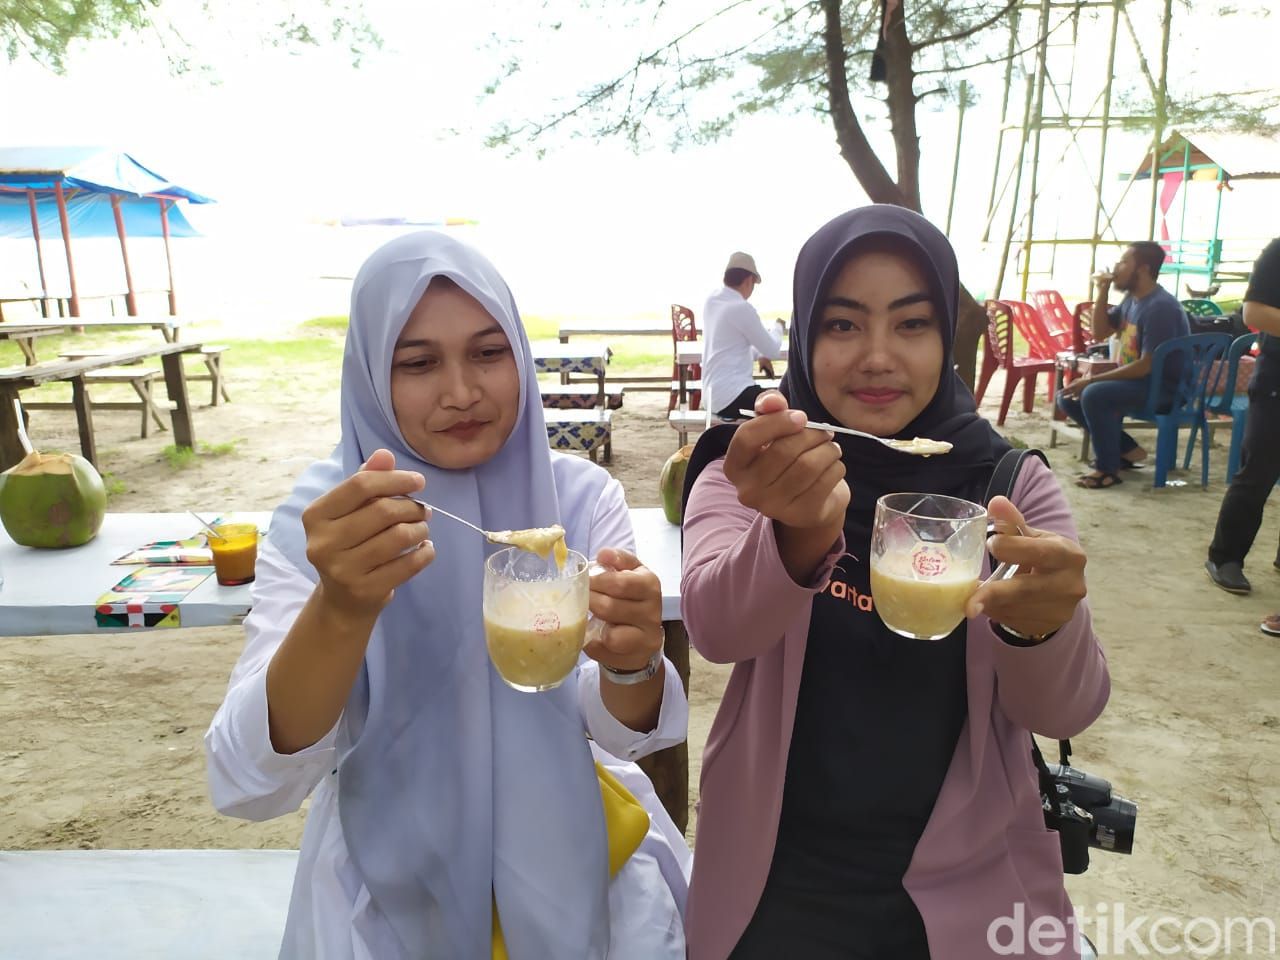 Memek, salah satu makanan khas Aceh.